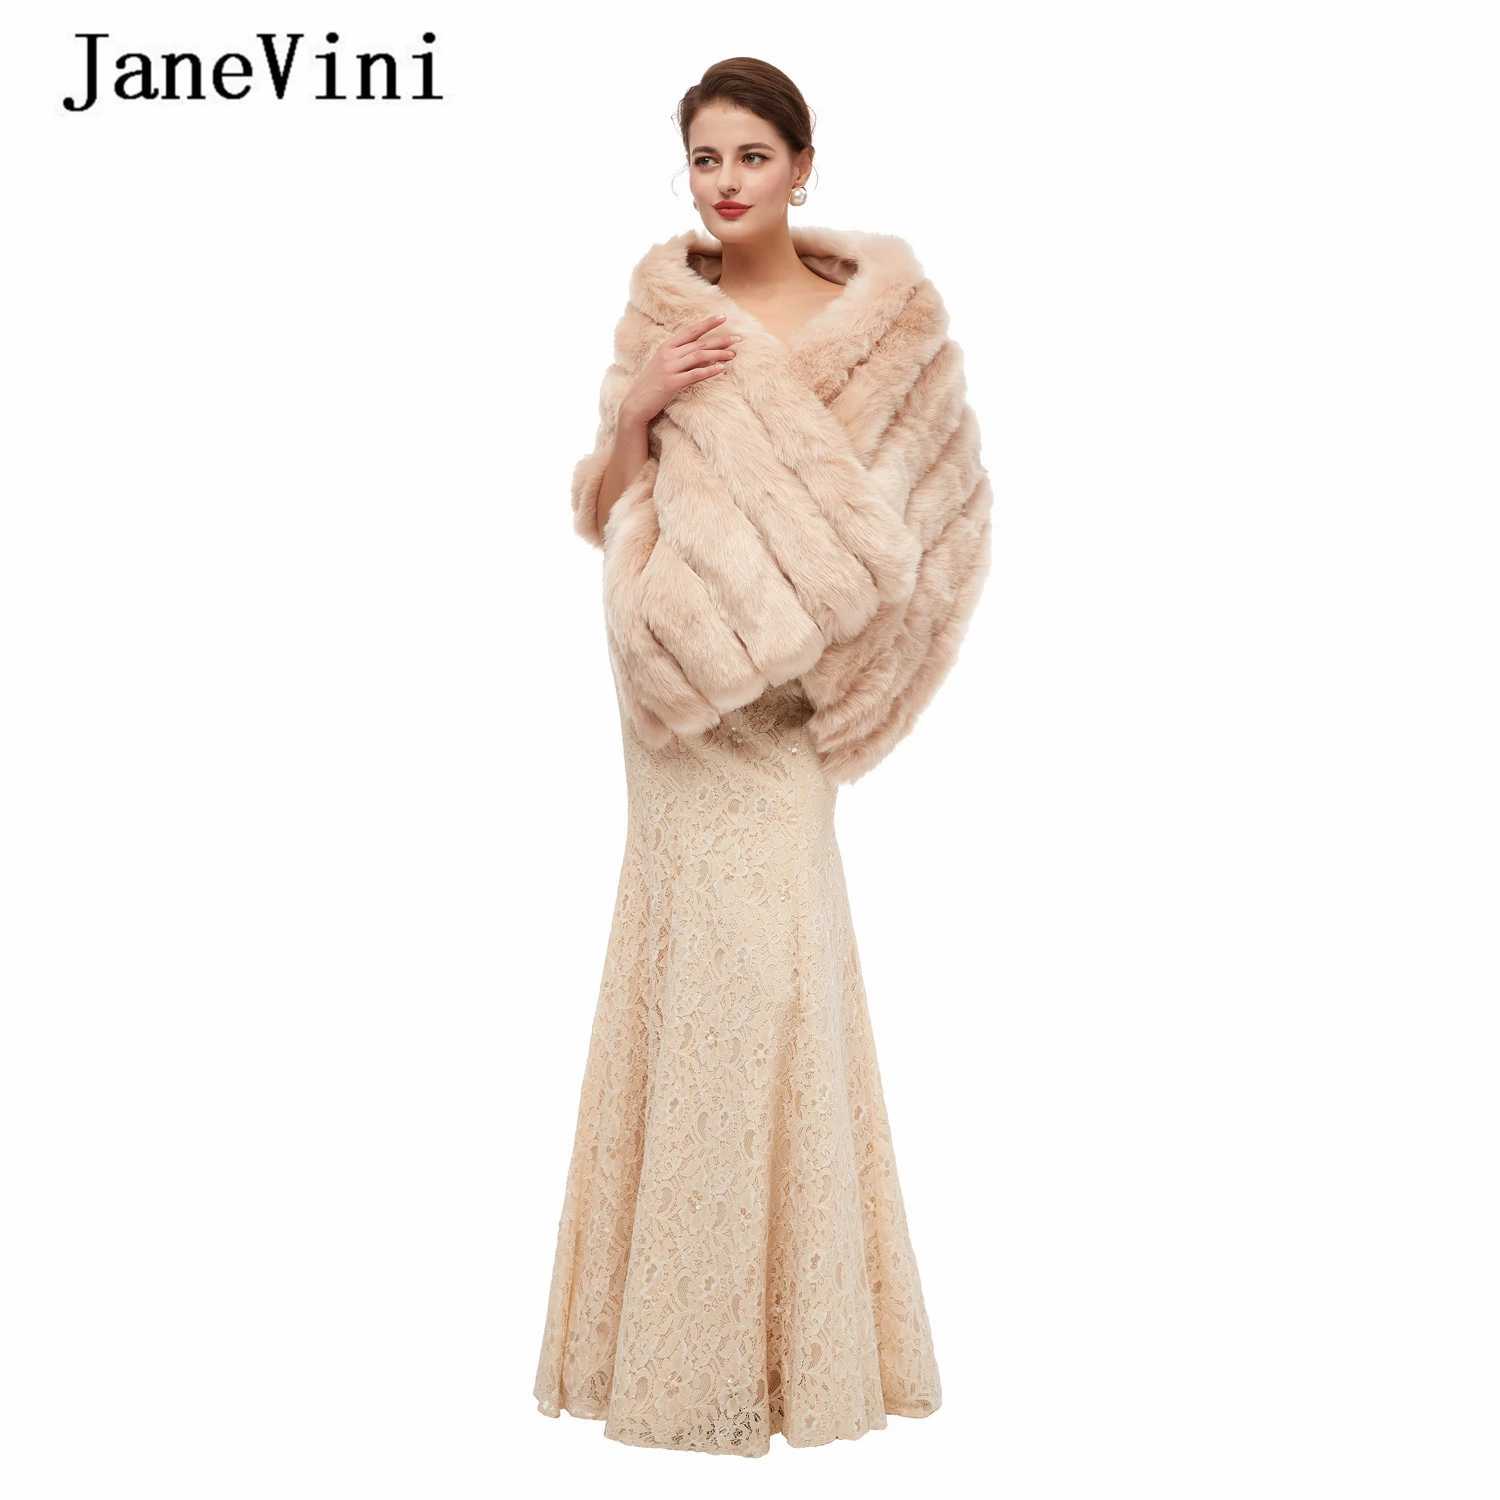 

JaneVini Elegant Winter Wedding Shrugs Faux Fur Stoles Ladies Soft Warm Shawls Wraps Outwear Bridal Boleros Wedding Accessories